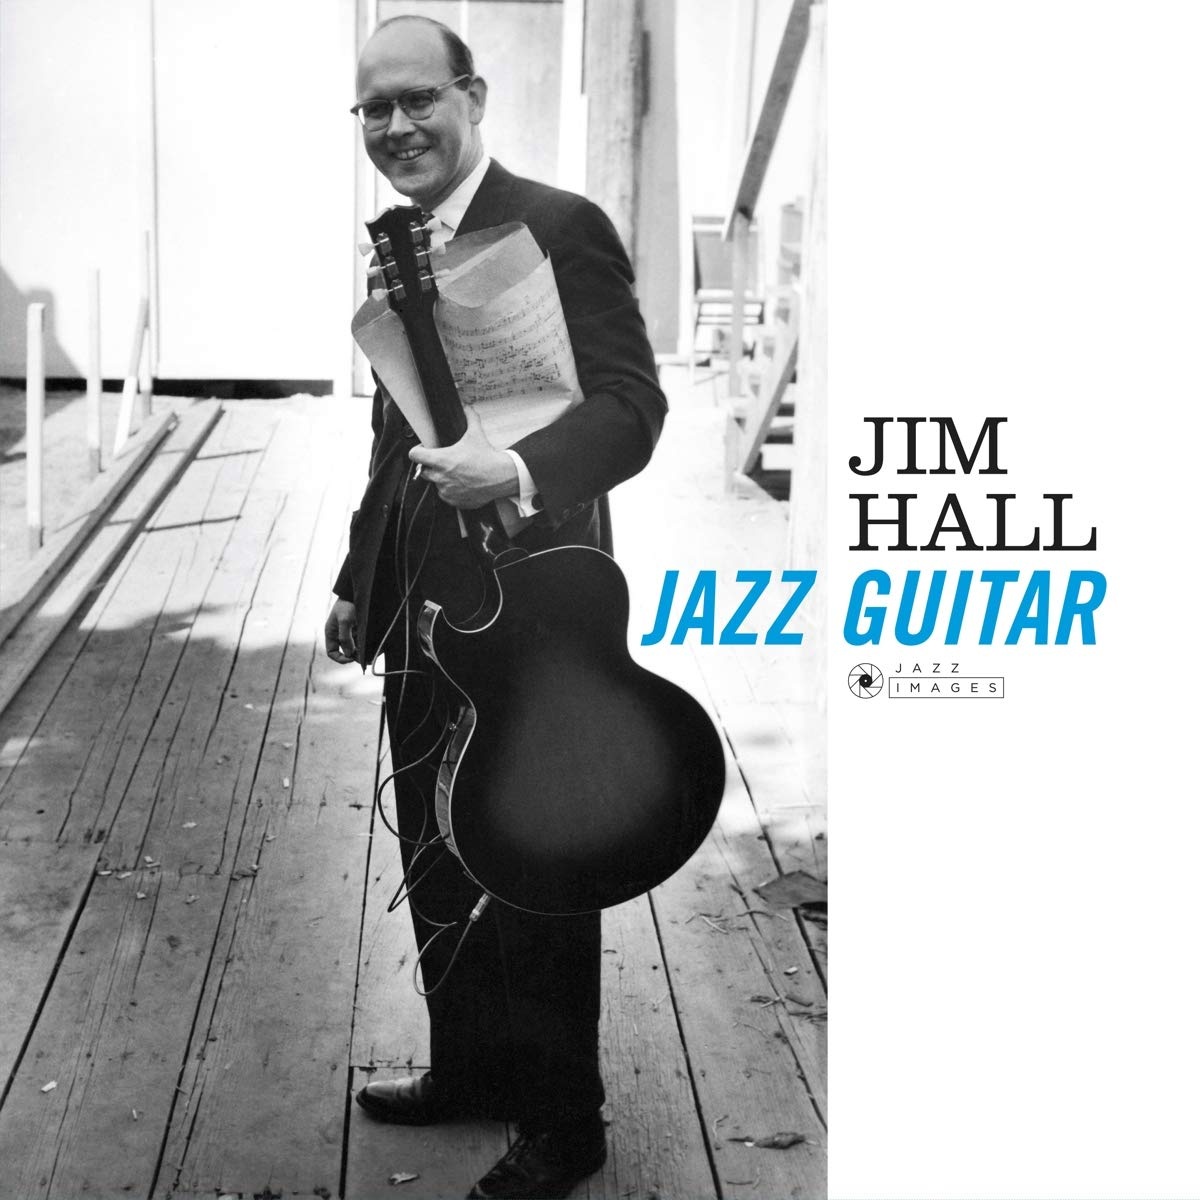 Jazz Hall Санкт-Петербург. Jimmy Hall CD. Jim Hall's three Джим Холл.